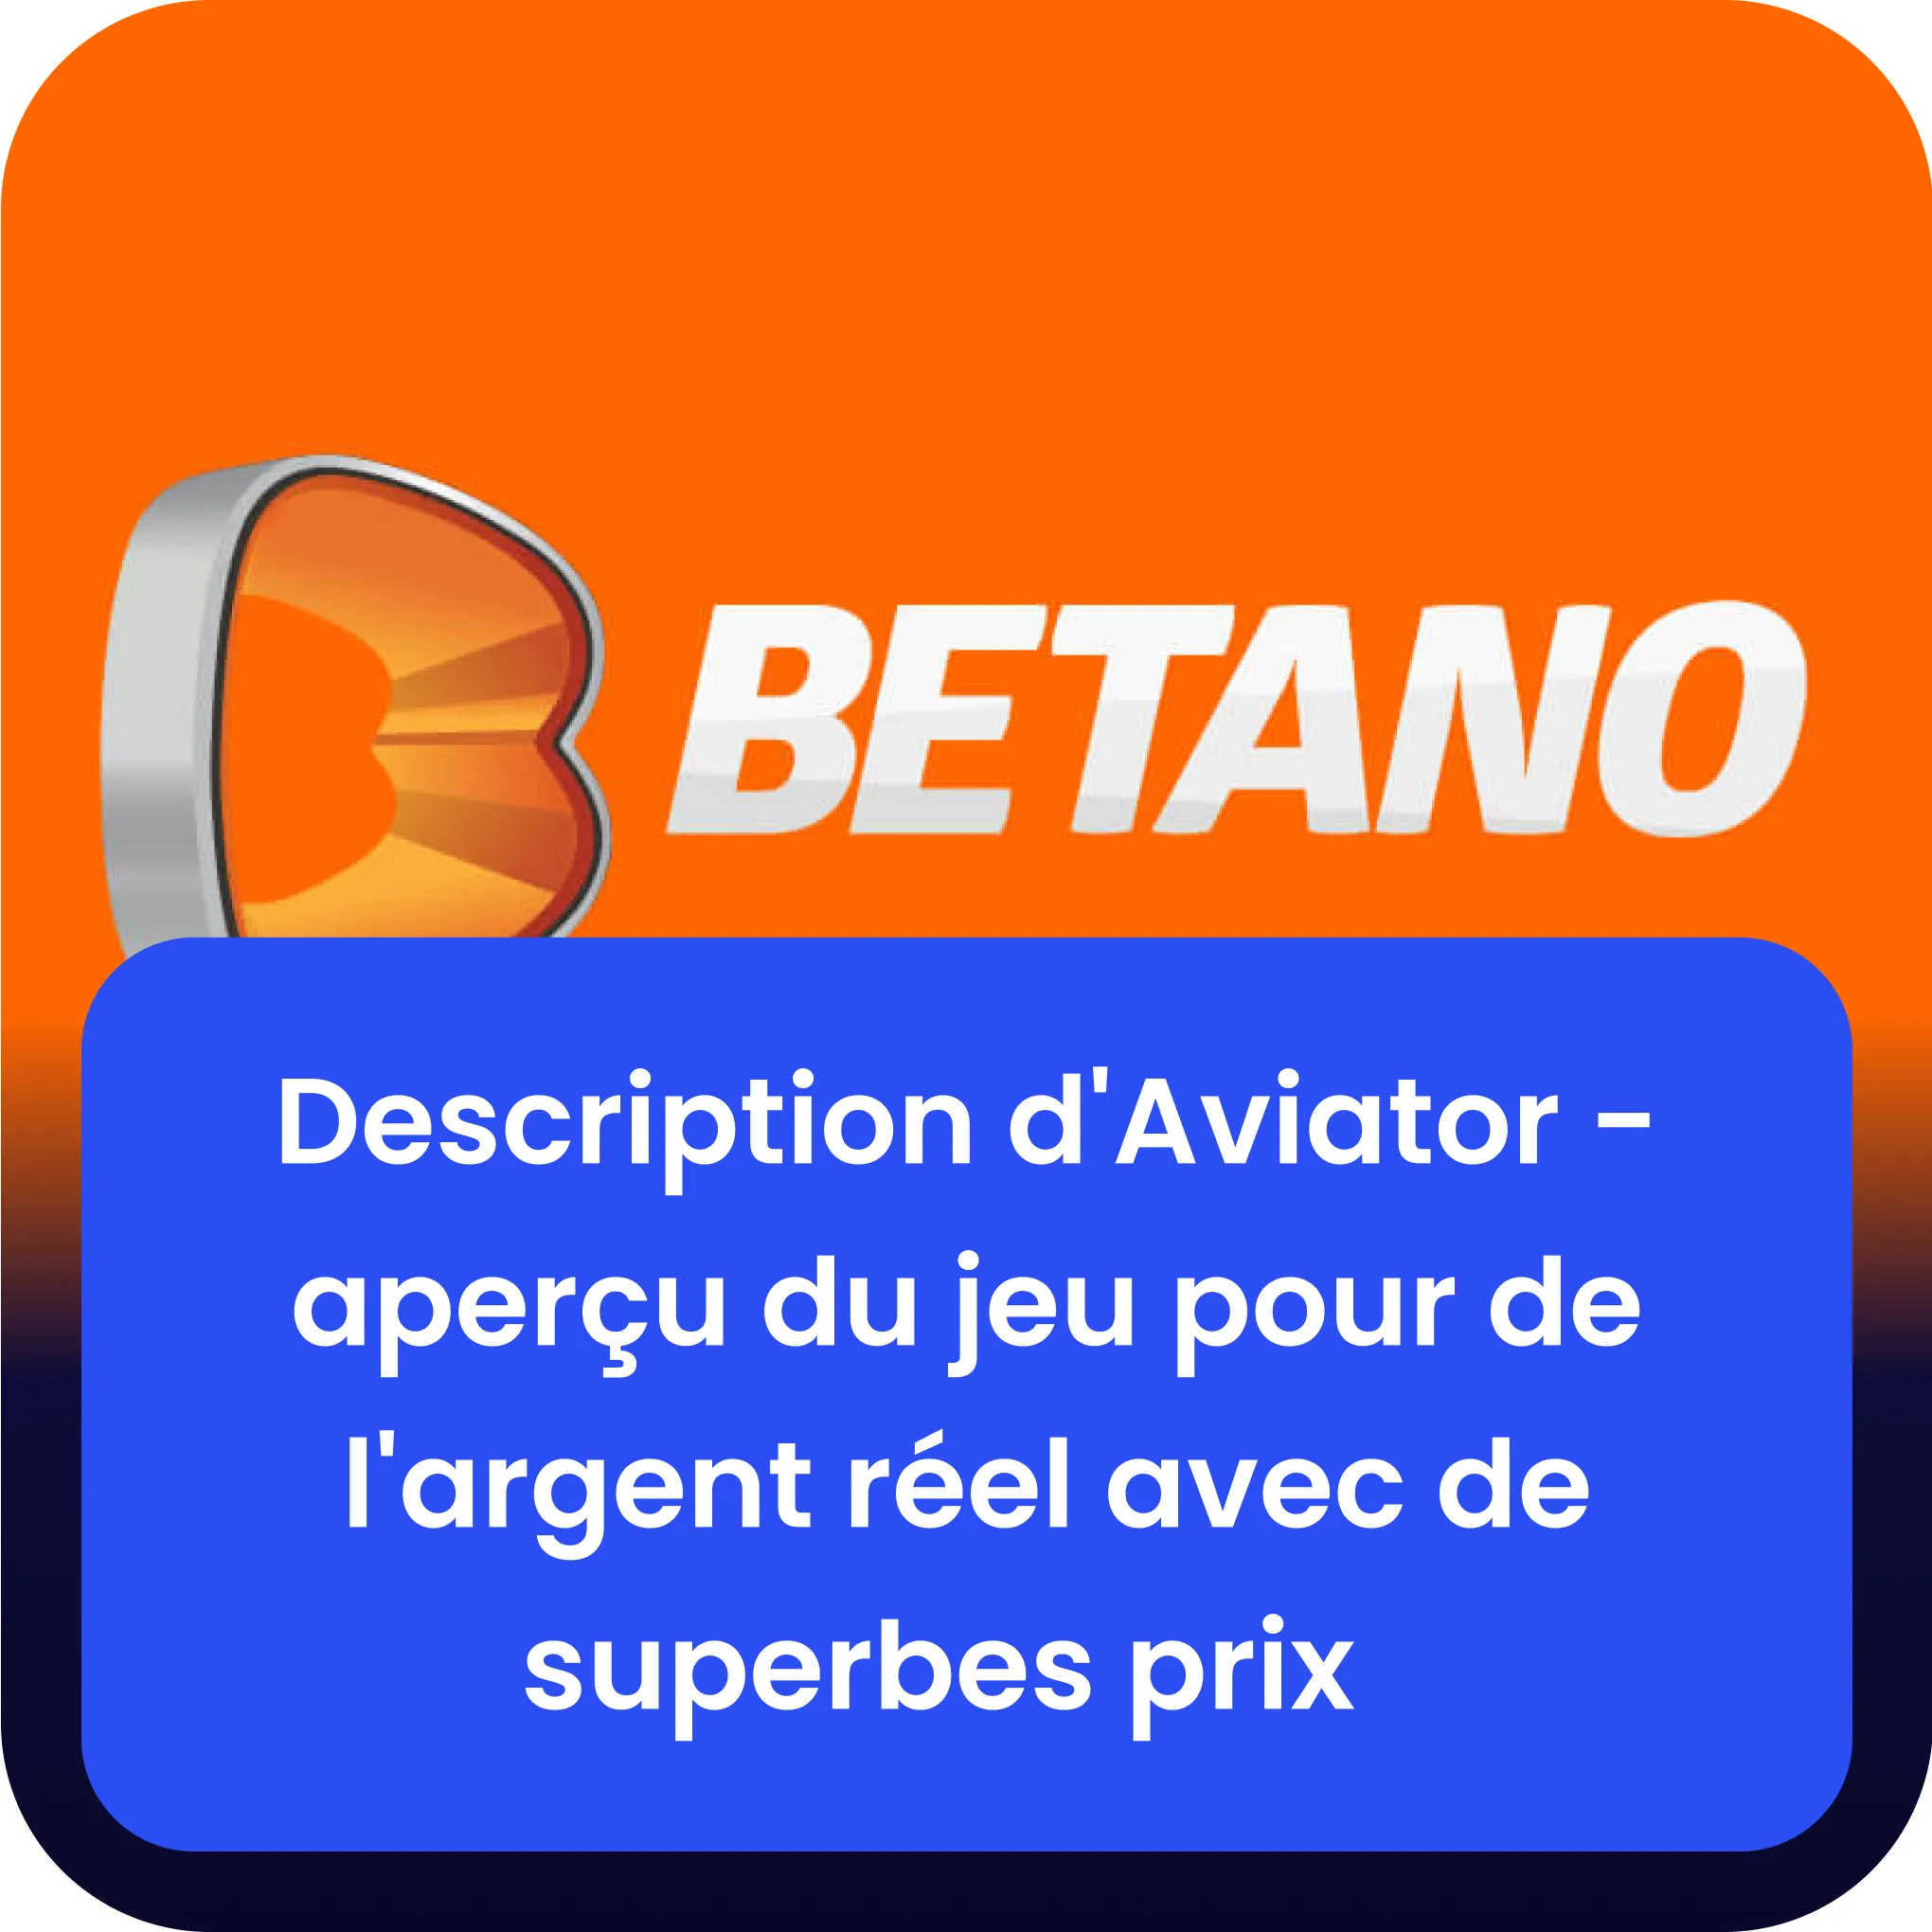 betano aviator description